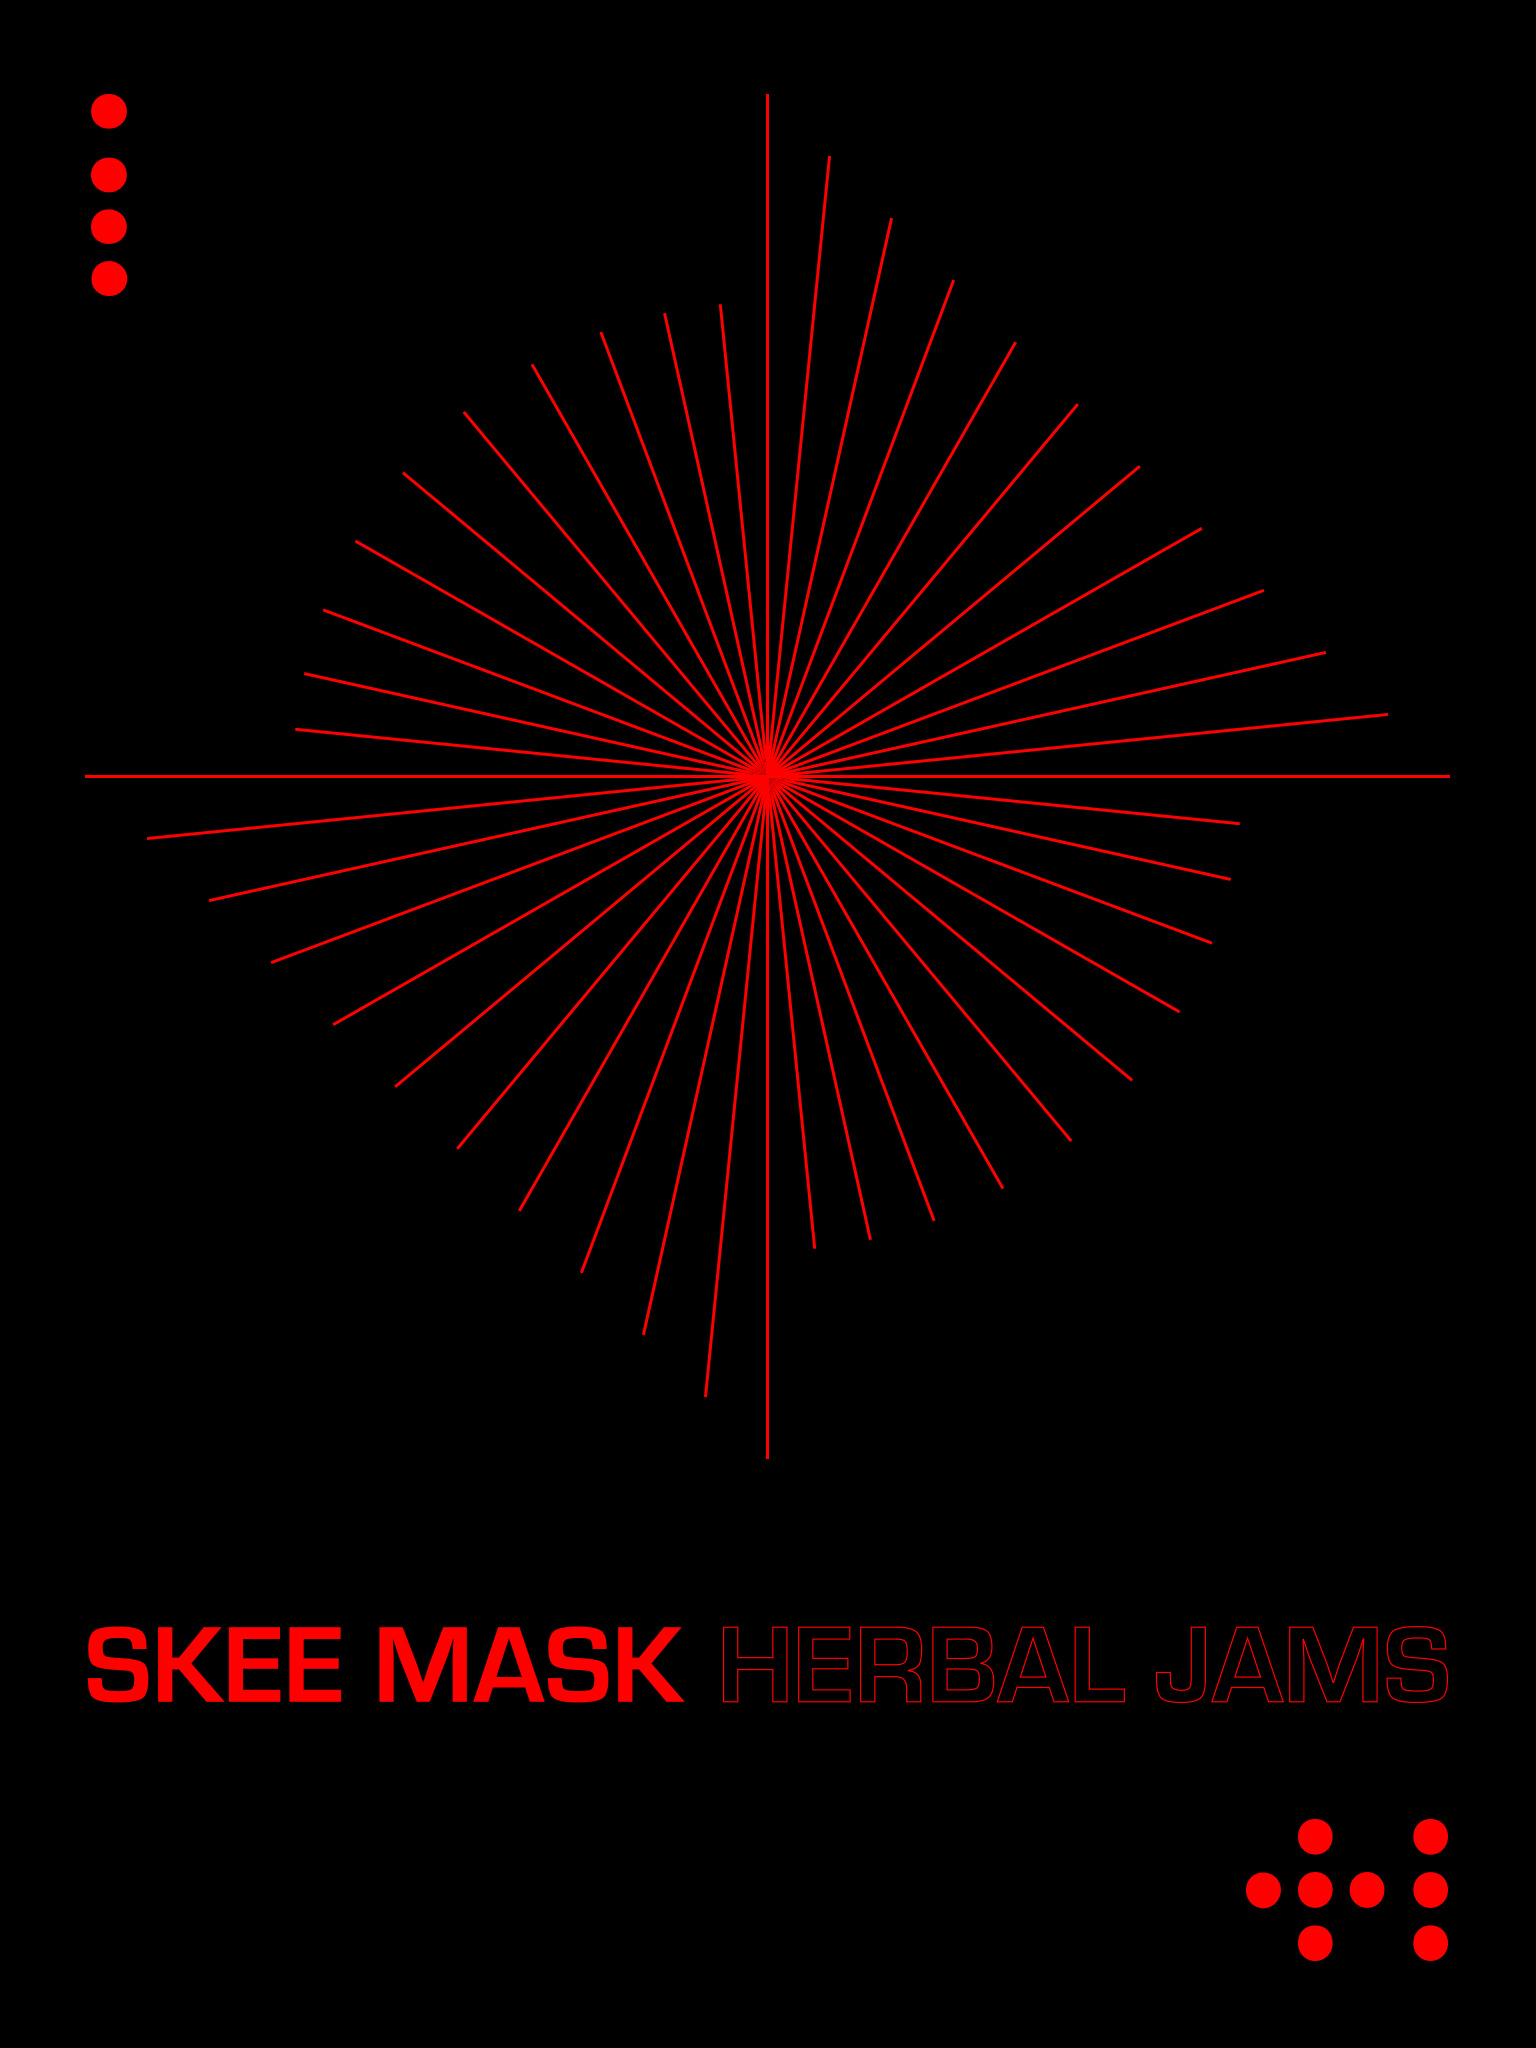 Skee Mask: Herbal jams  